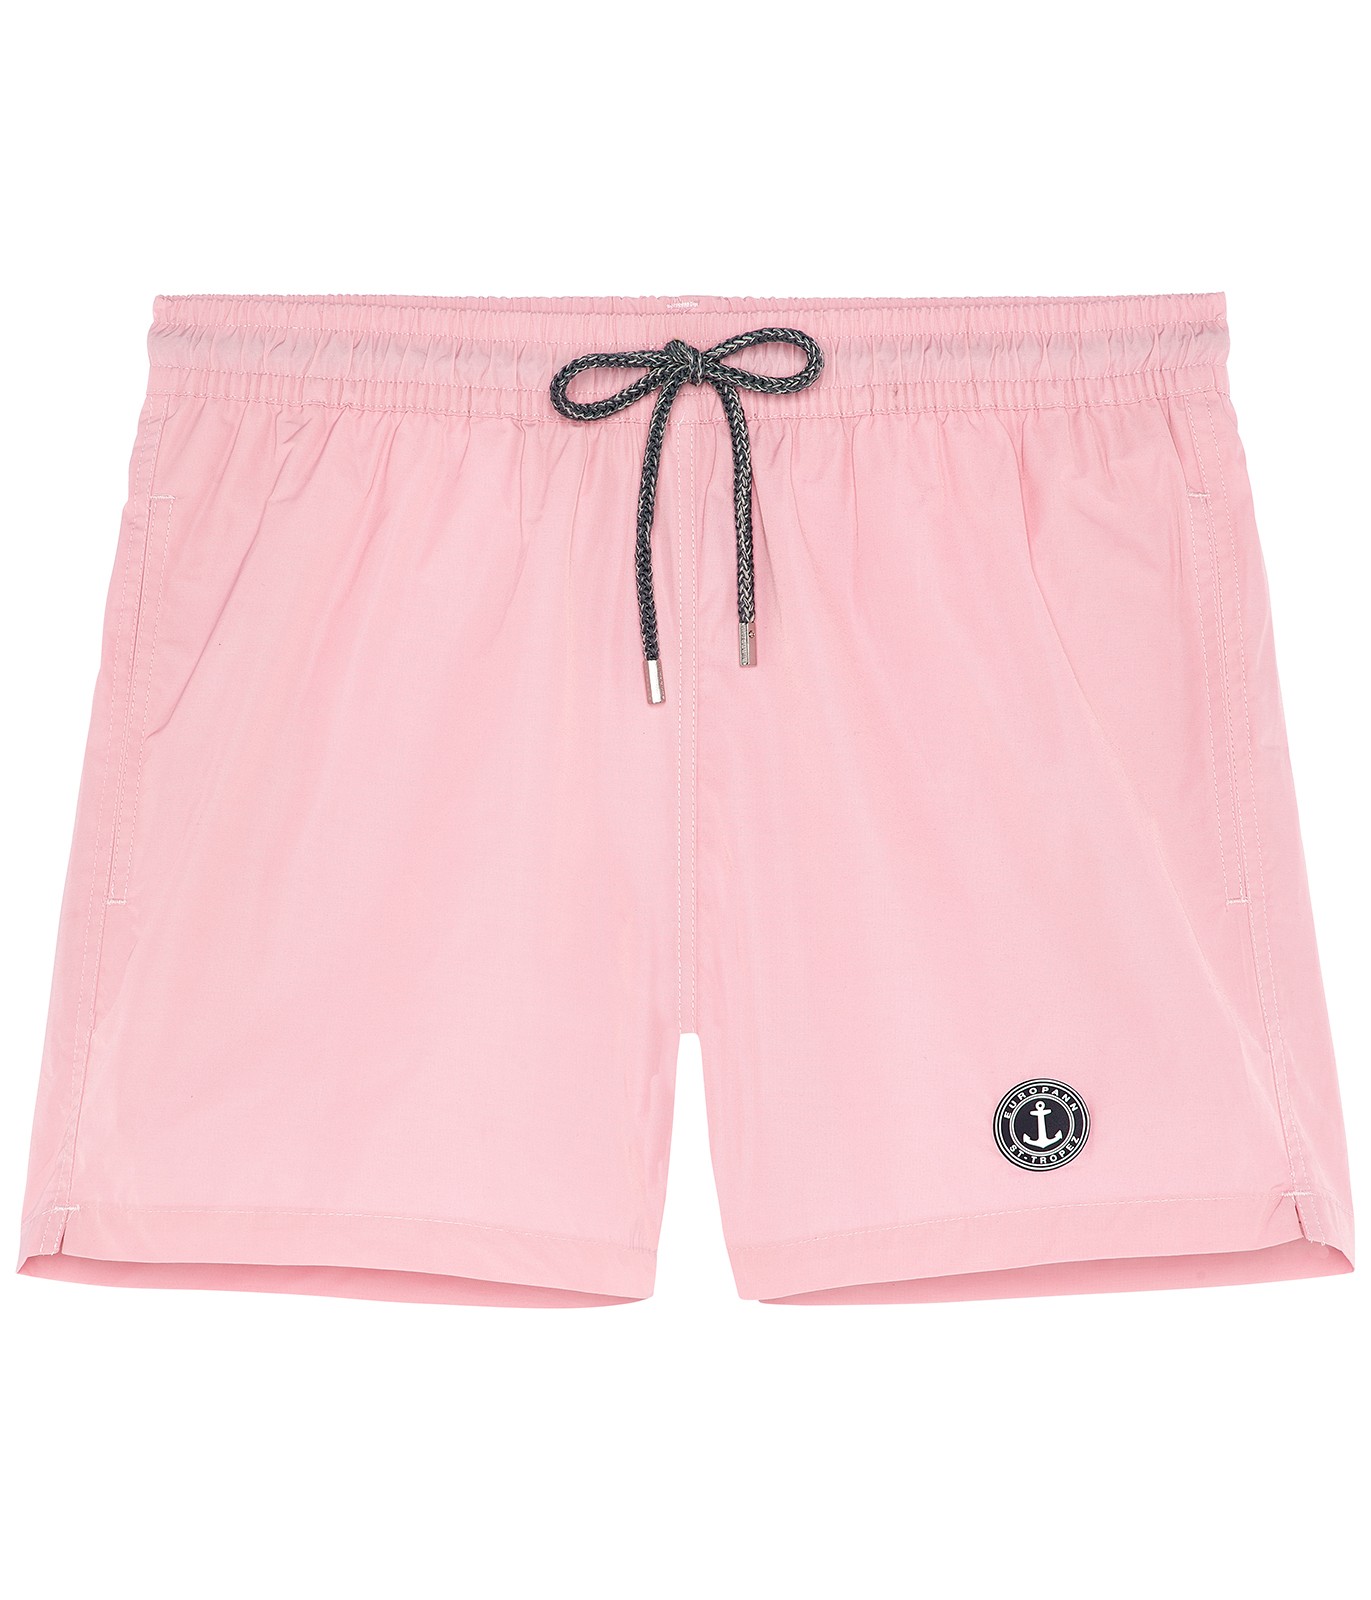 Plain pink swimshort for mens